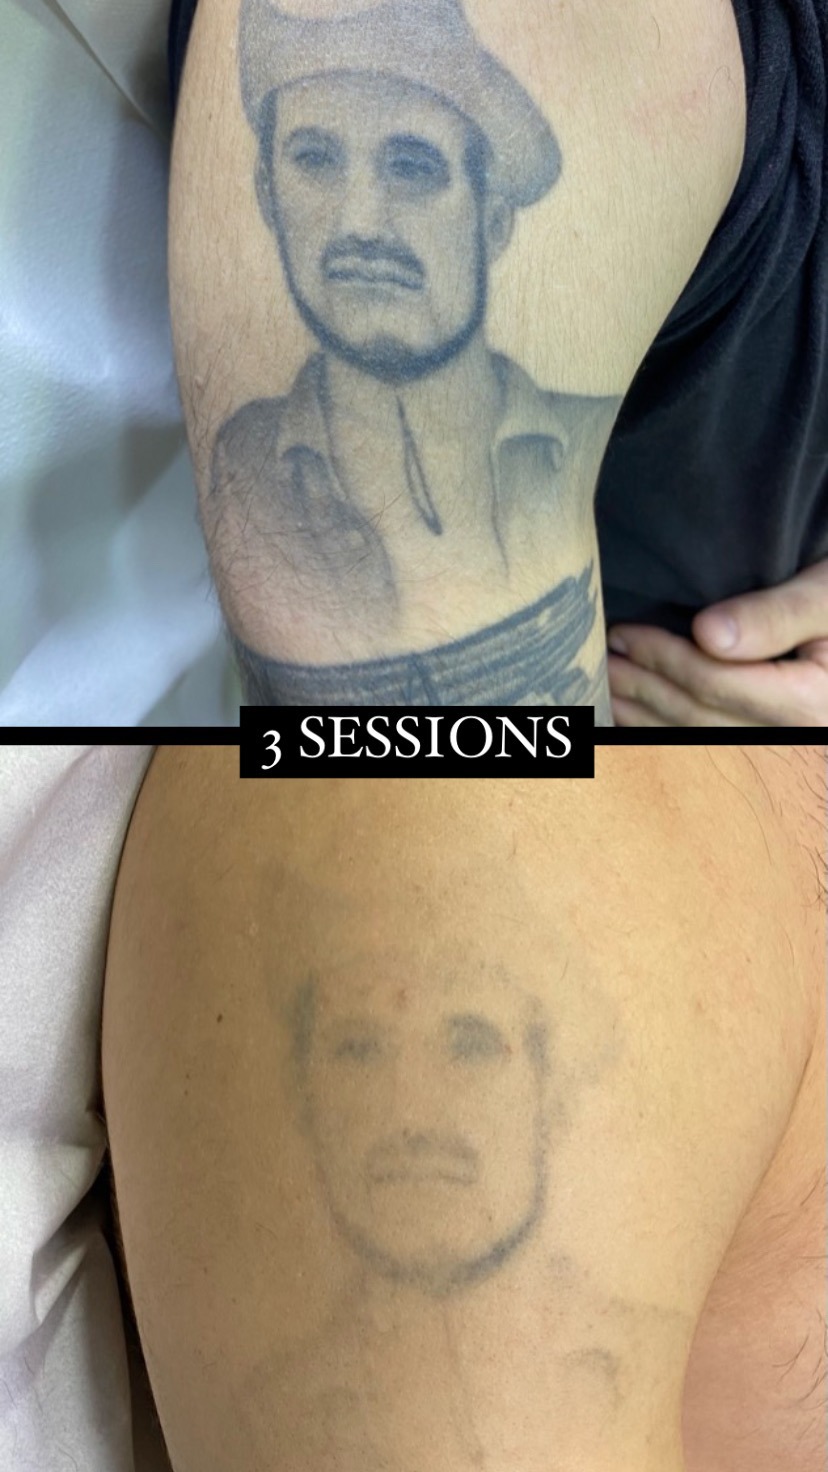 resultat del laser tattoo després d'unes sessions